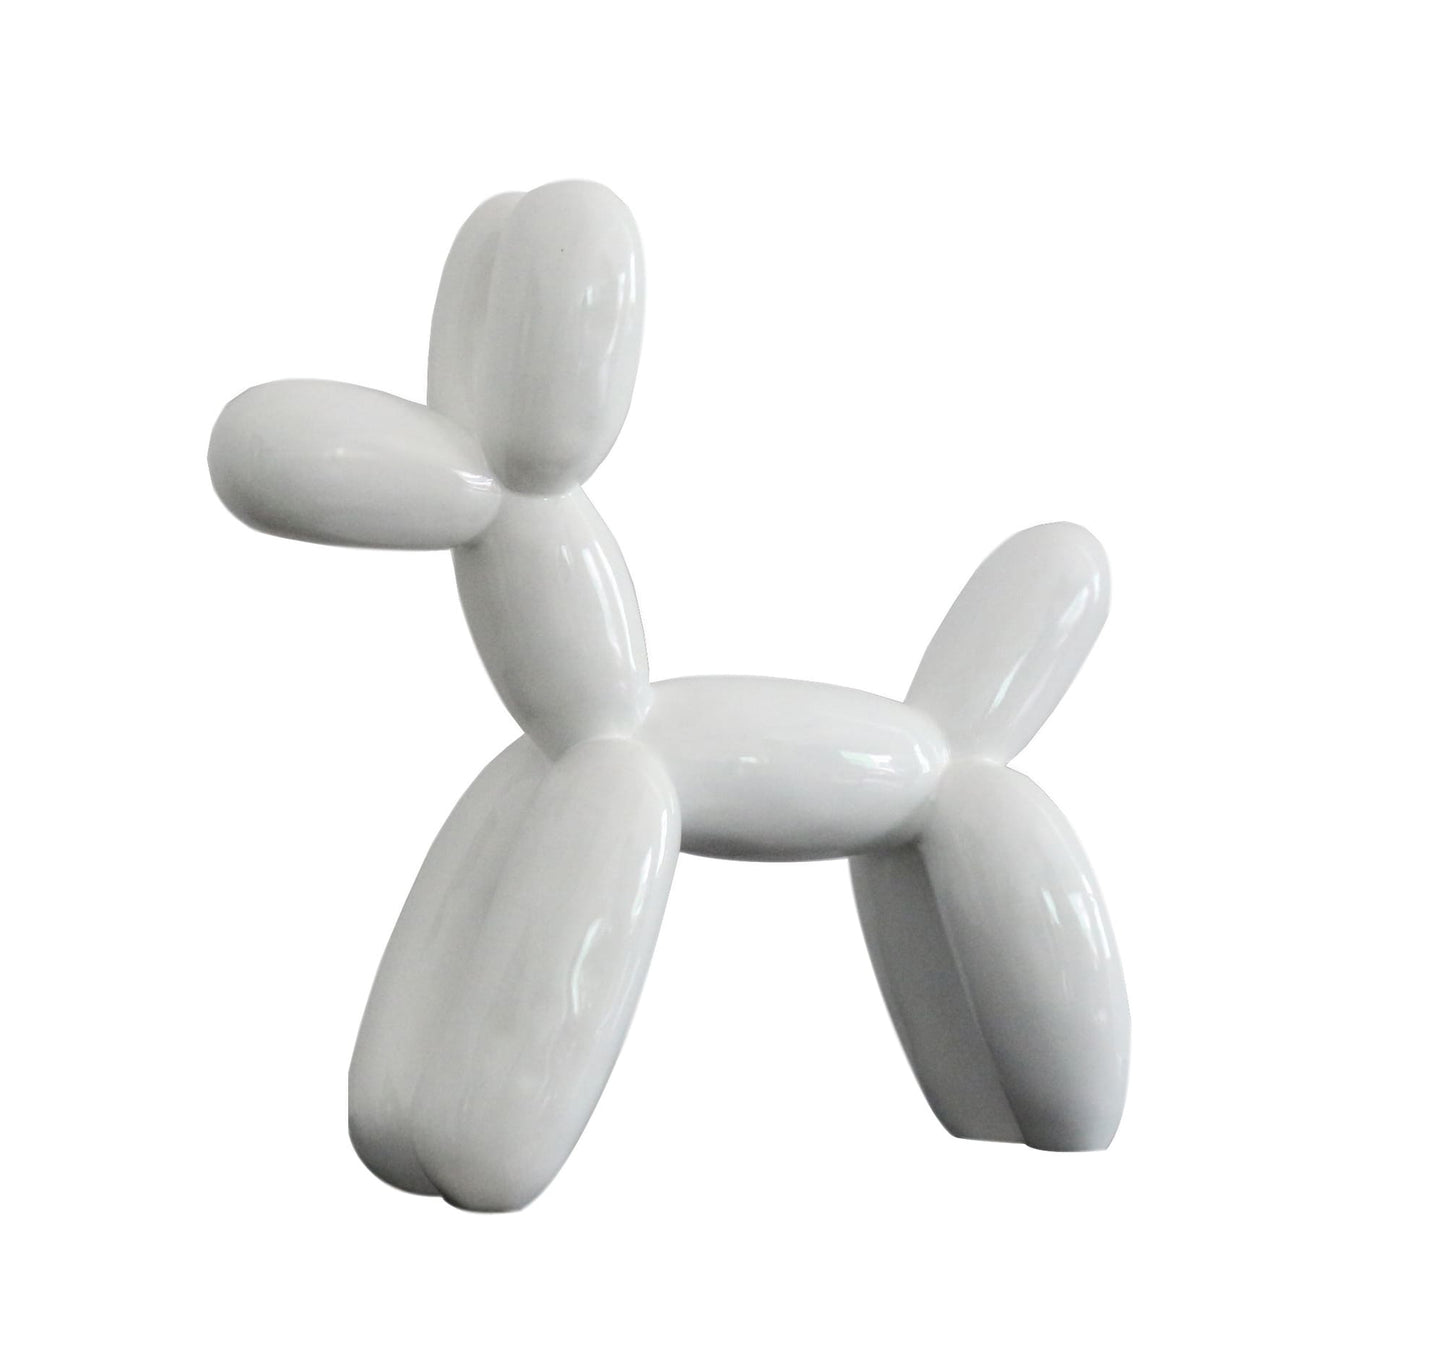 VIG Furniture Modrest White Large Balloon Dog Sculpture